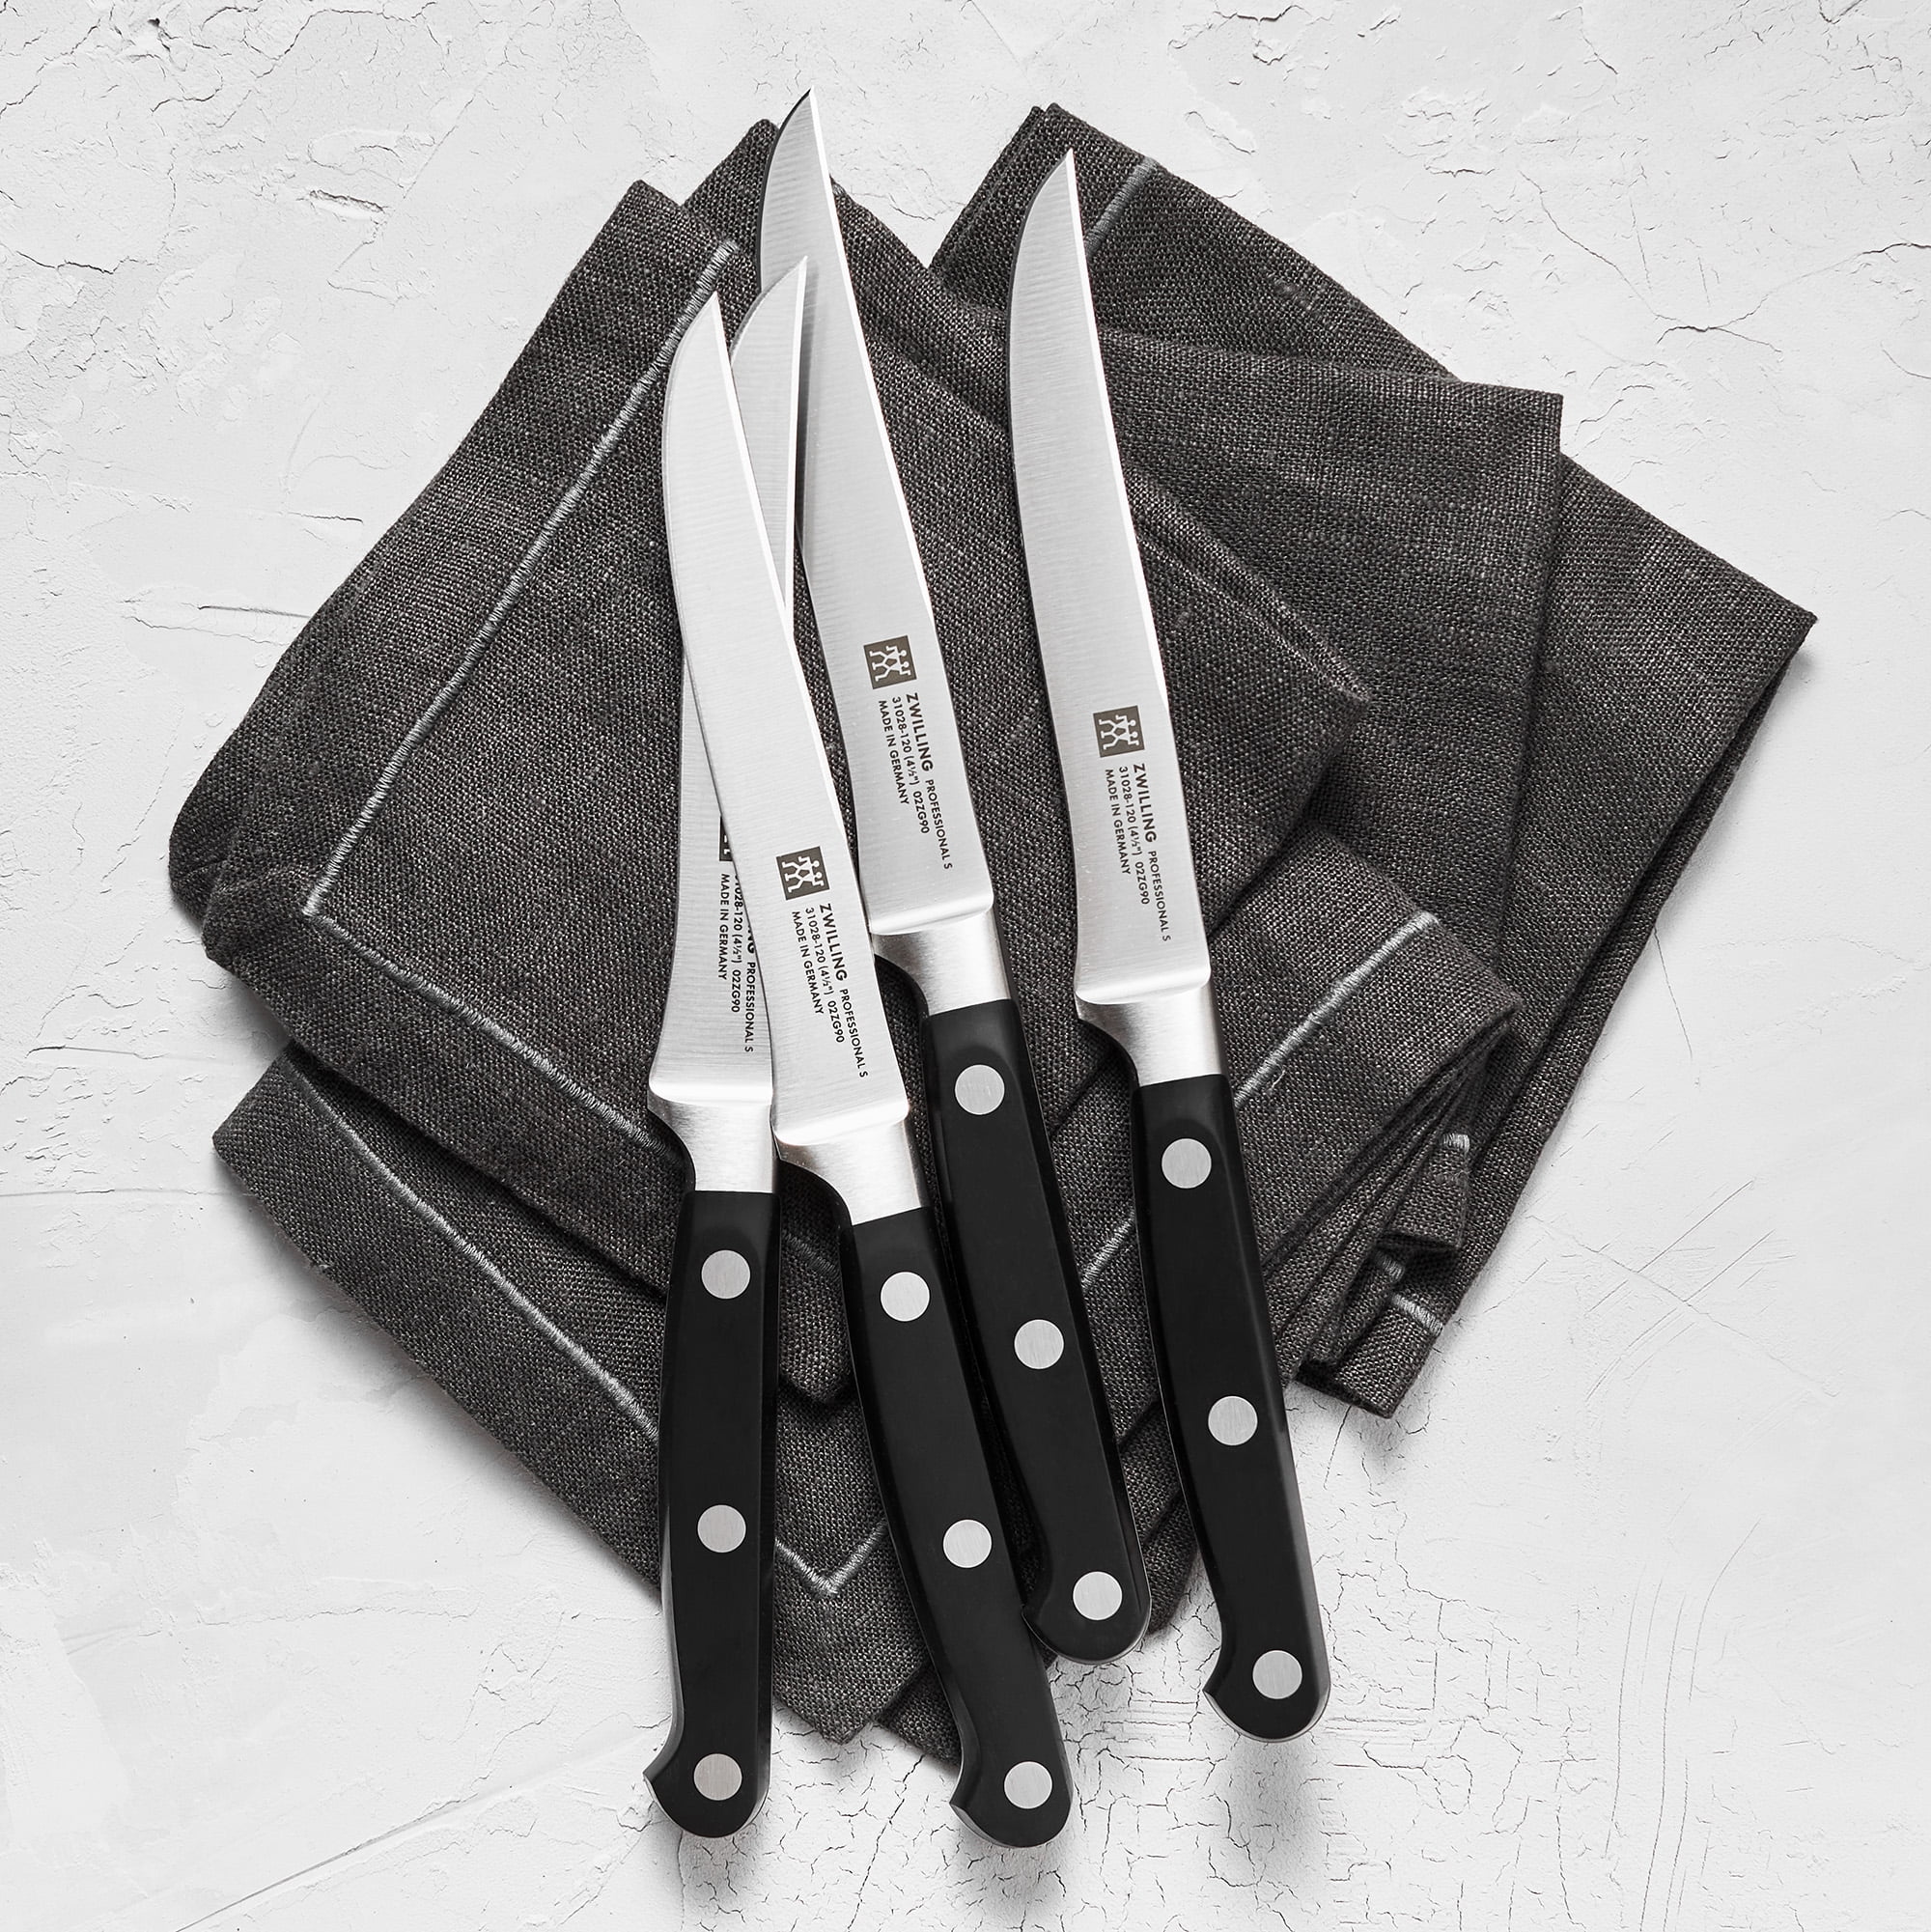 ZWILLING Porterhouse 4.5 in. Stainless Steel Full Tang Steak Knife Set of 8  in. Black Presentation Box 39129-850 - The Home Depot